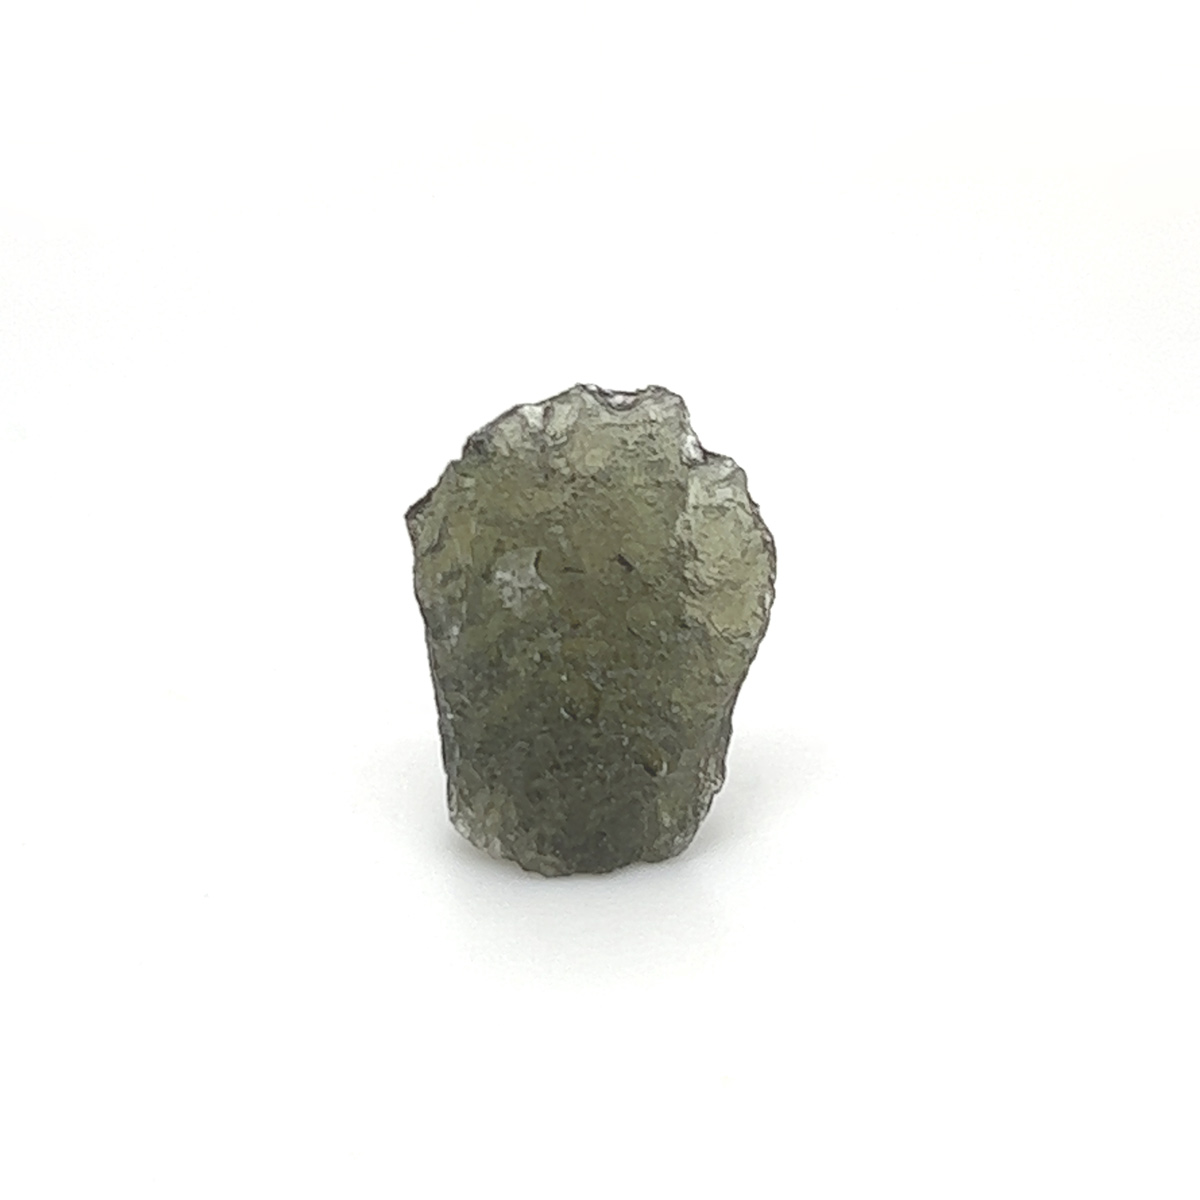 Genuine Moldavite Specimen k658__2022-07-22-14-19-30